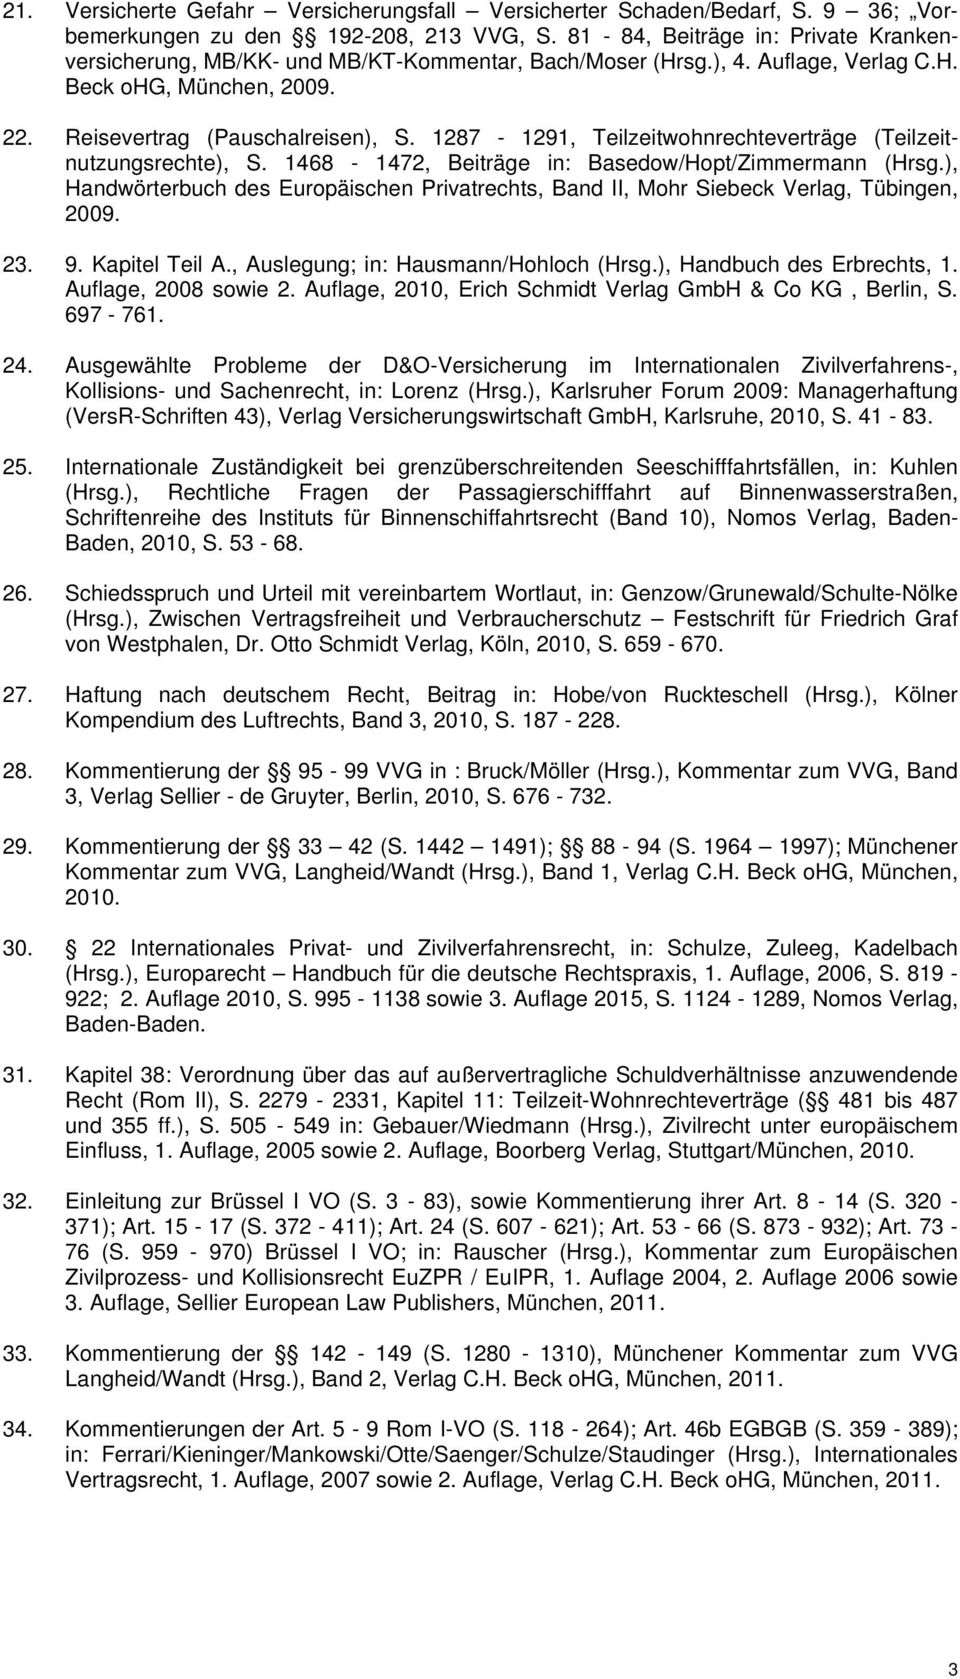 1287-1291, Teilzeitwohnrechteverträge (Teilzeitnutzungsrechte), S. 1468-1472, Beiträge in: Basedow/Hopt/Zimmermann (Hrsg.